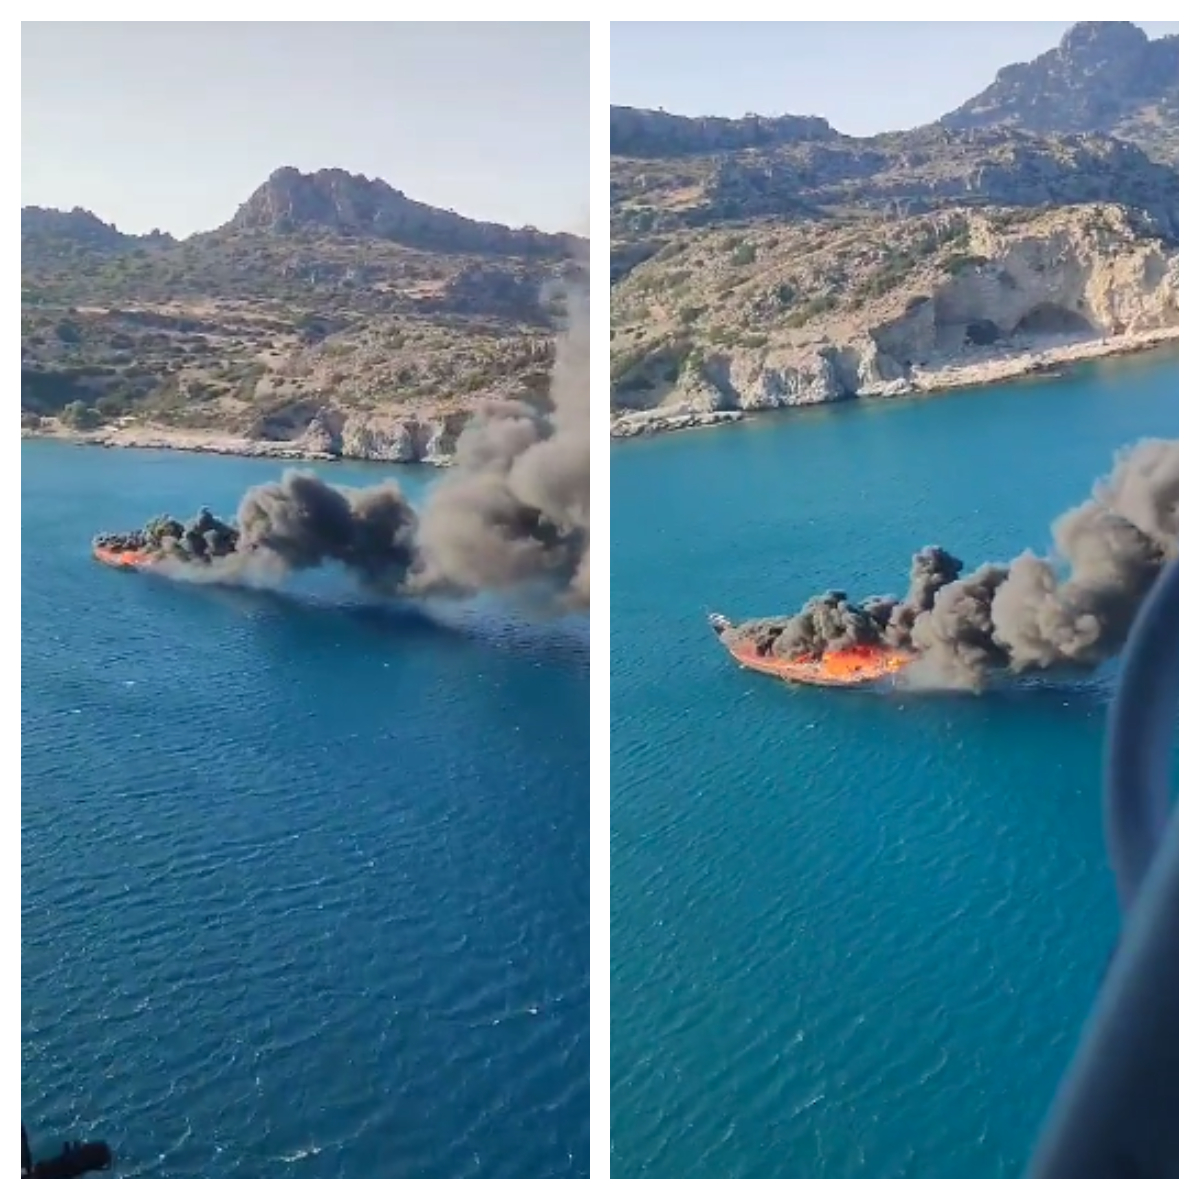 Η σοκαριστική στιγμή που τουριστικό πλοίο στη Ρόδο τυλίγεται στις φλόγες - Δείτε βίντεο